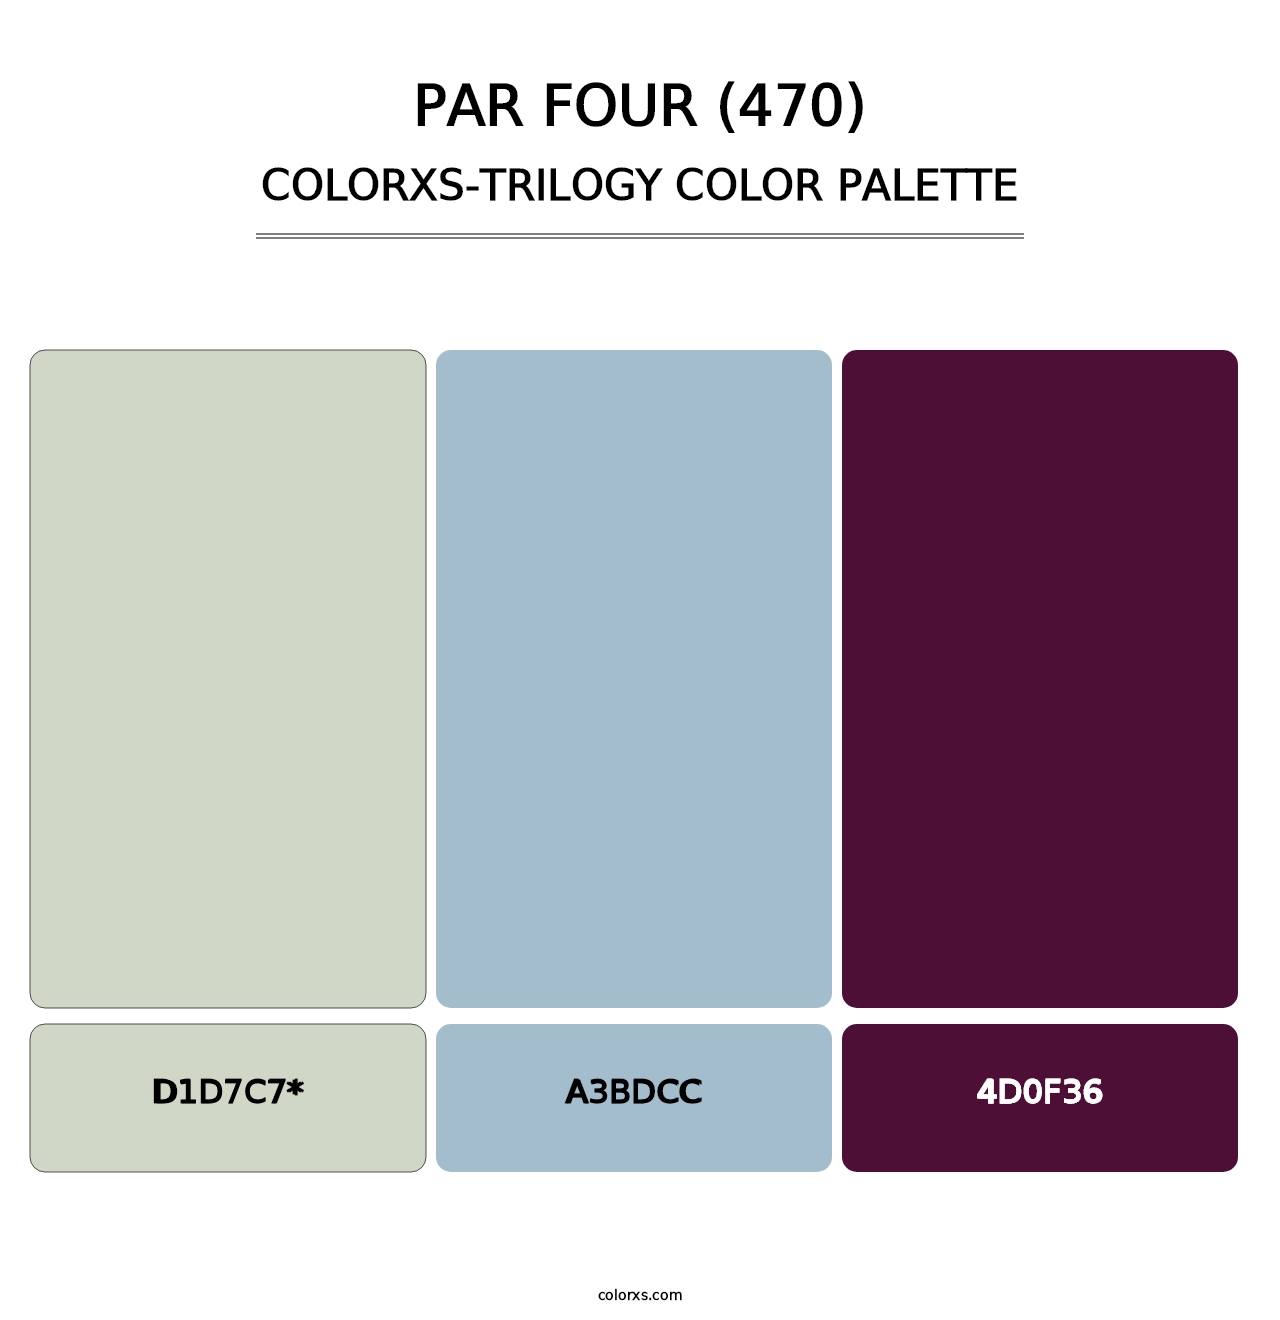 Par Four (470) - Colorxs Trilogy Palette